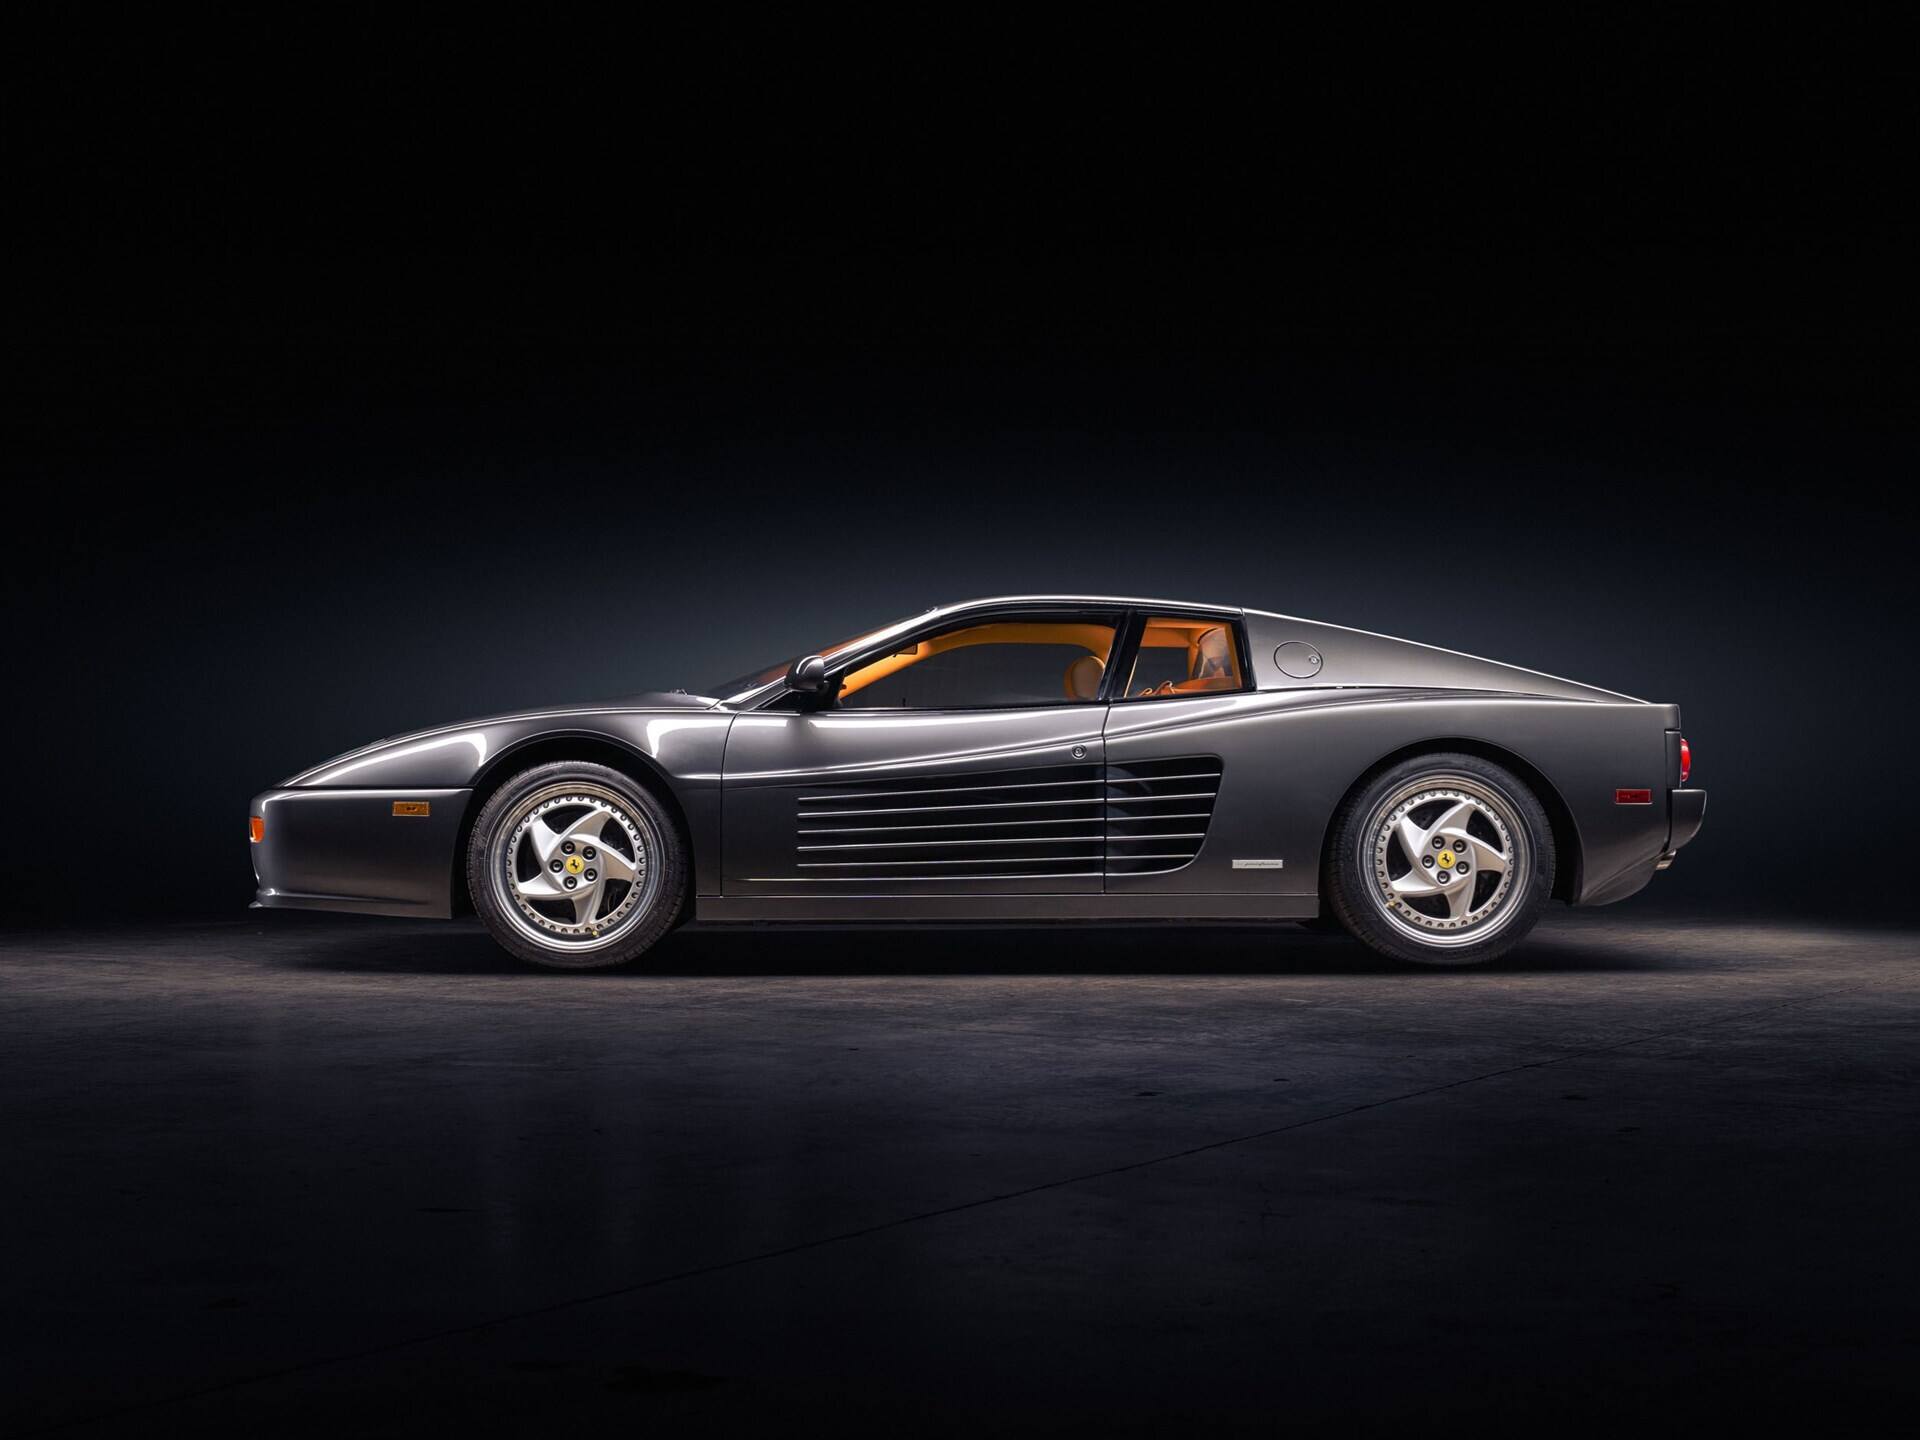 imagen 2 de Sale a subasta un espectacular Ferrari F512 M Coupe de 1995.